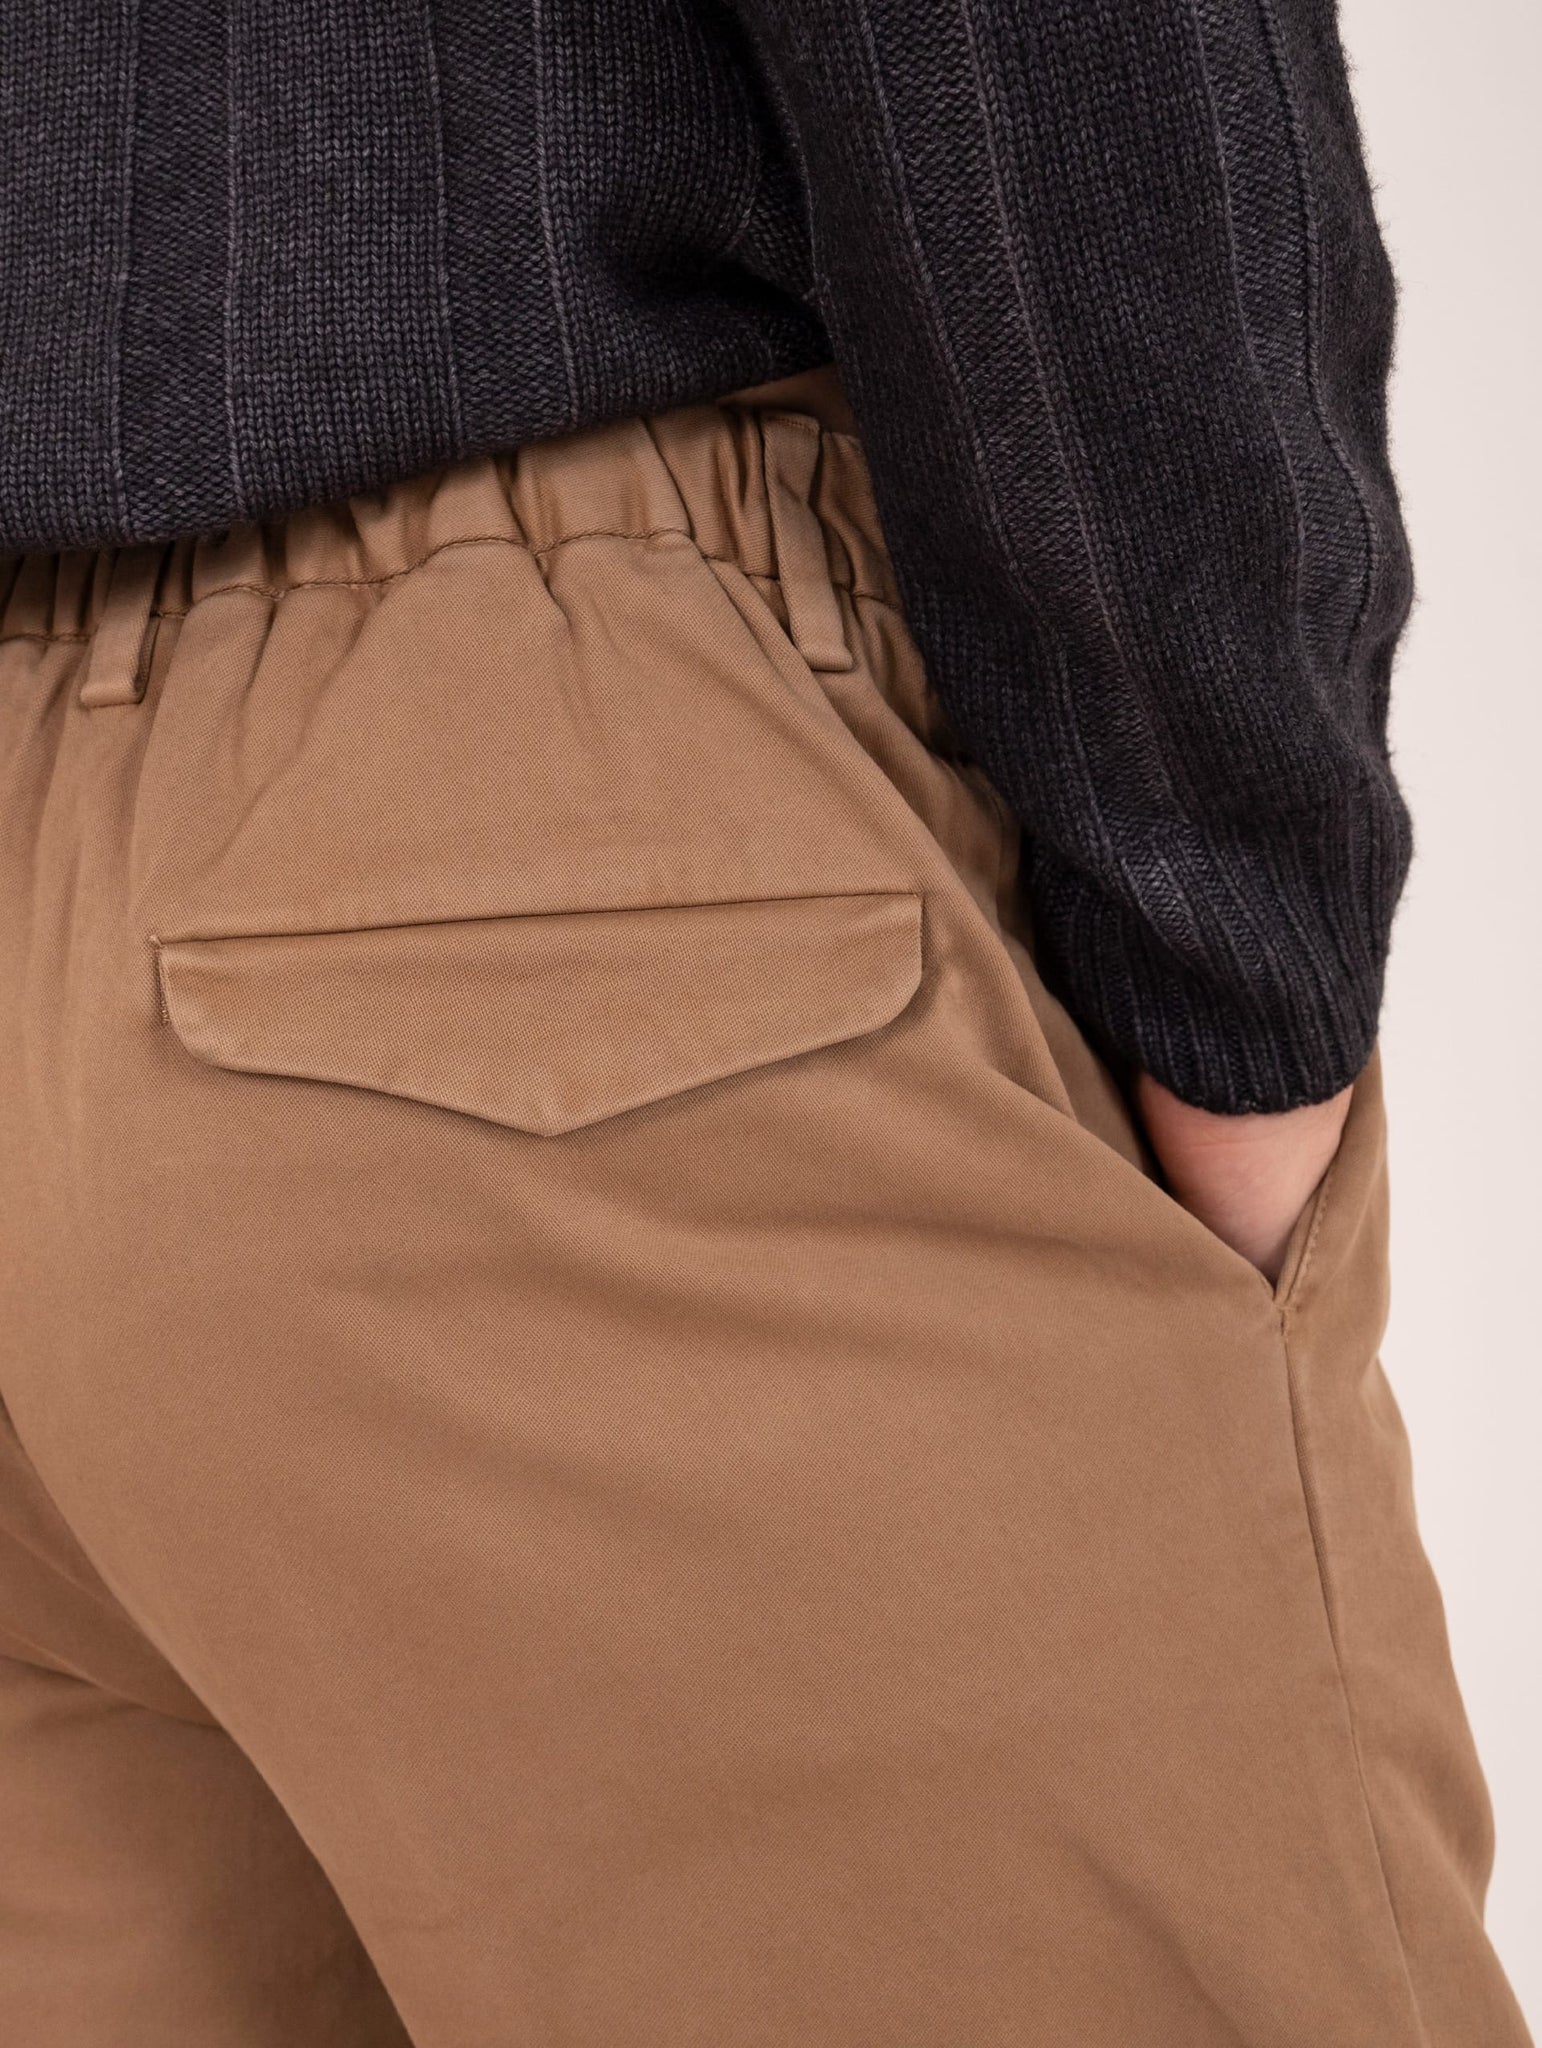 Pantalone Chino Devore in Raso di Cotone Superpima Nocciola